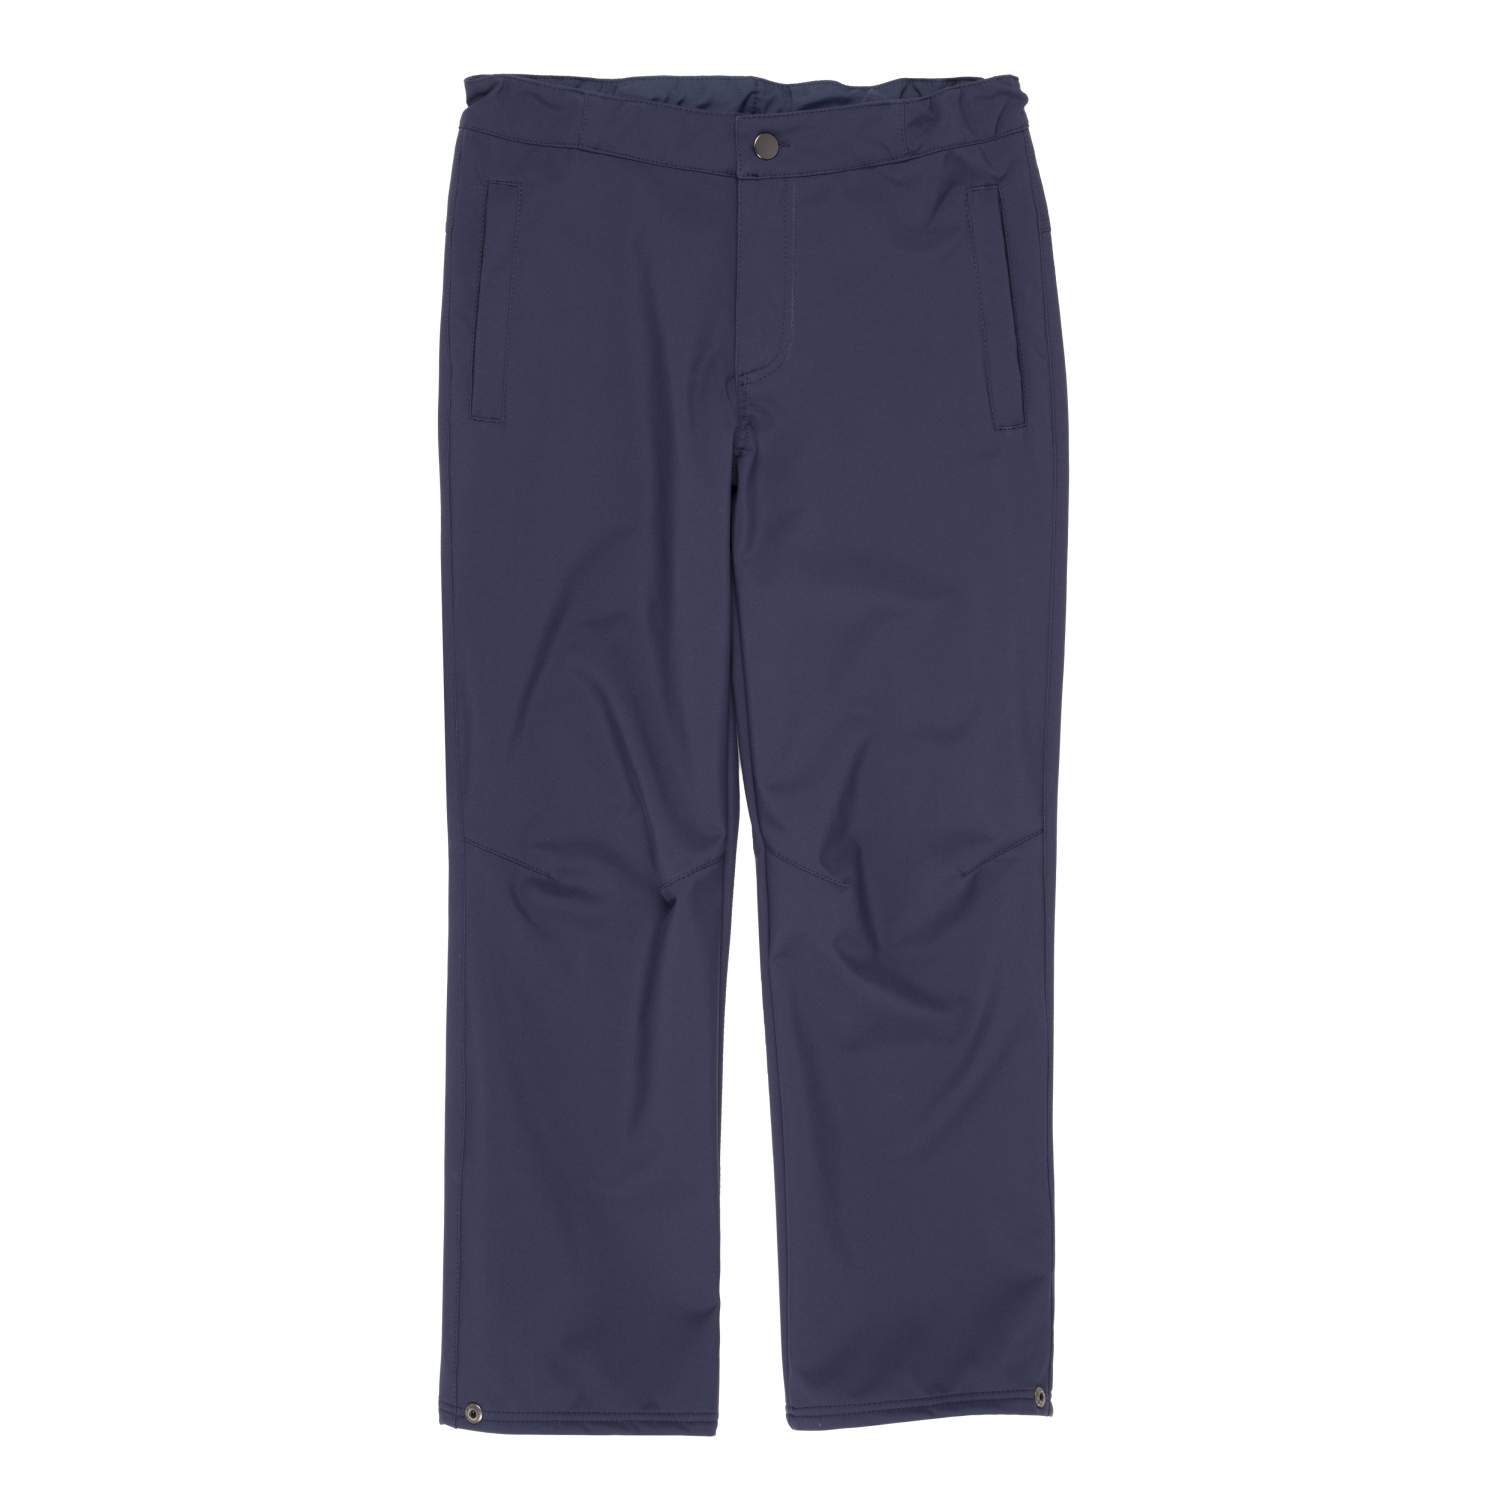 Купить брюки Kerry JAMES K21659/229 цв. синий р. 158, цены в Москве наМегамаркет